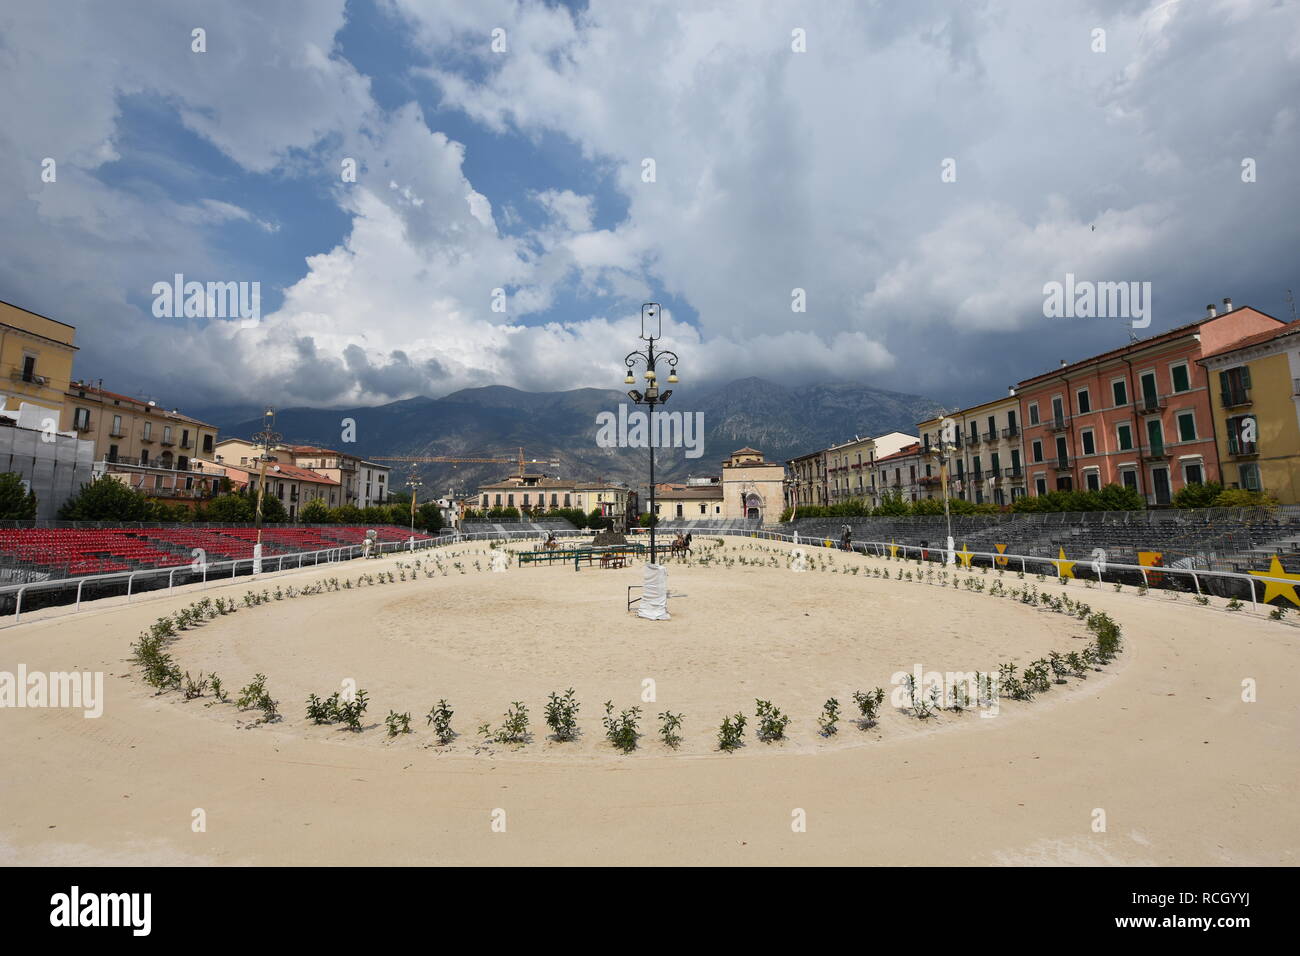 Una piazza della città medievale di Sulmona, in Italia Foto Stock